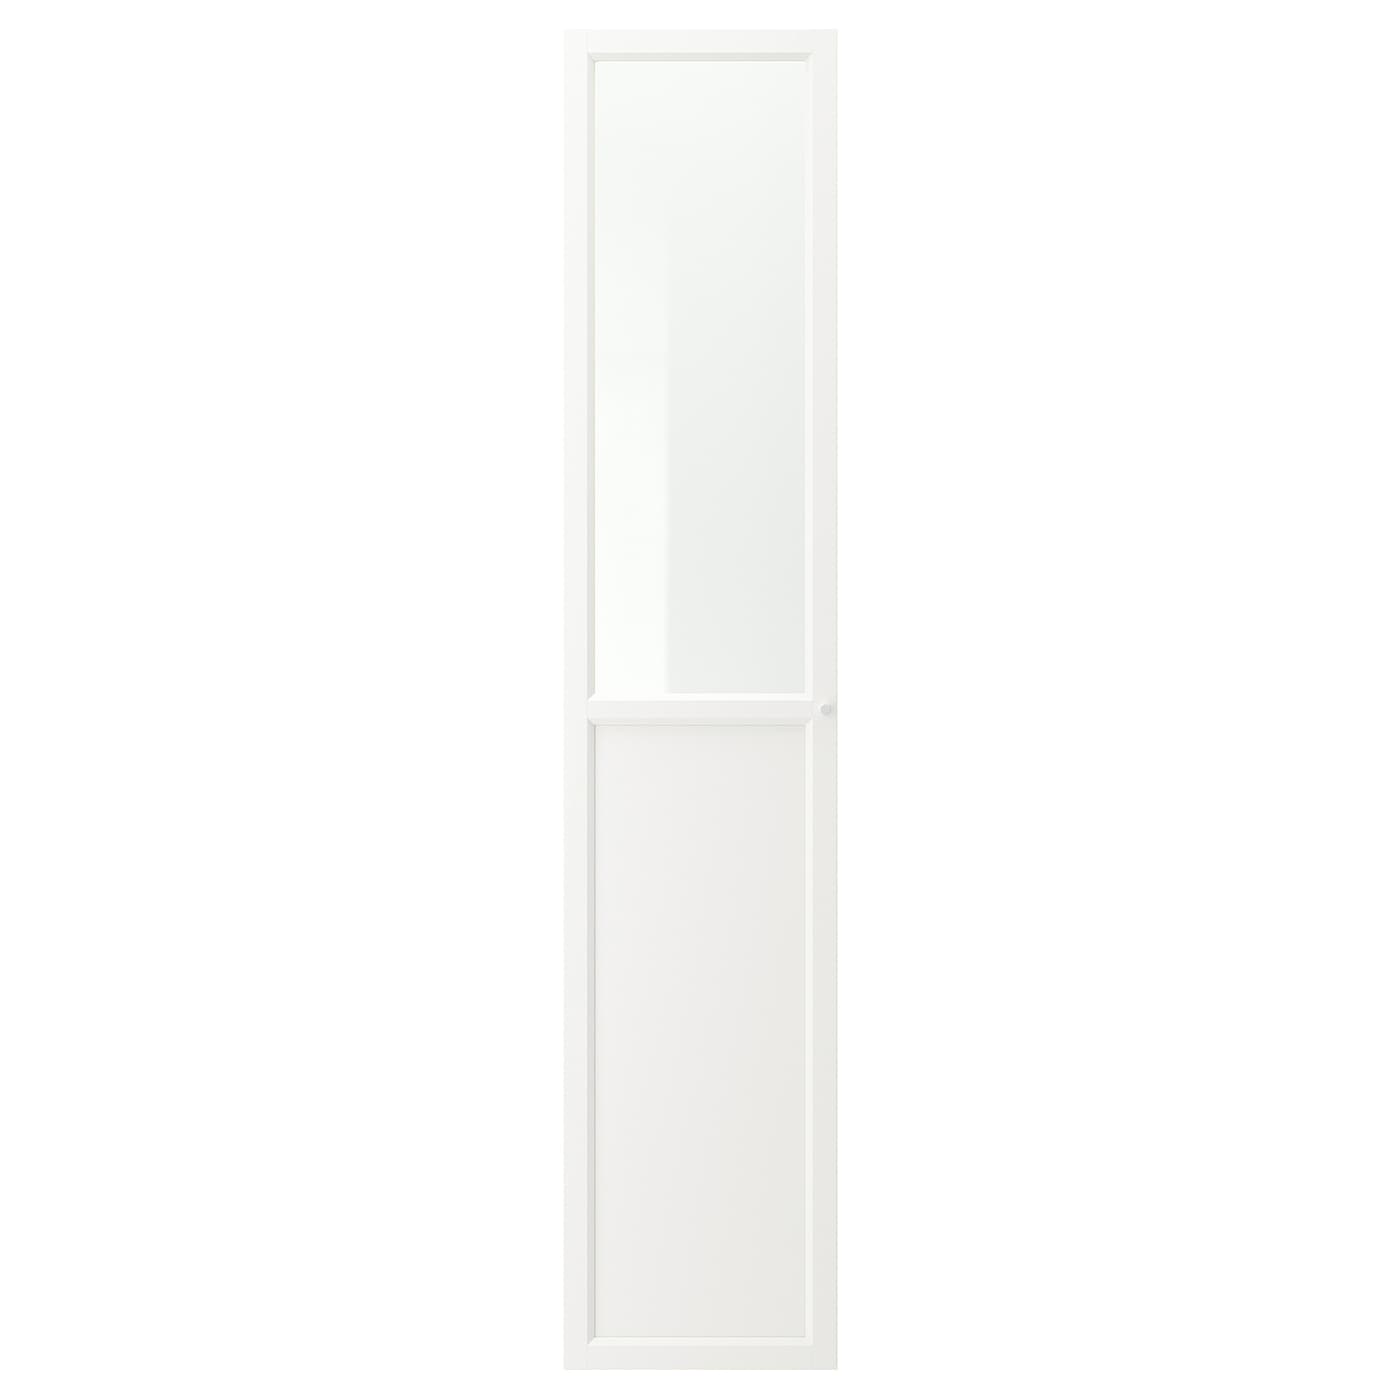 Дверца - OXBERG  IKEA/ ОКСБЕРГ ИКЕА,  40x192 см, белый